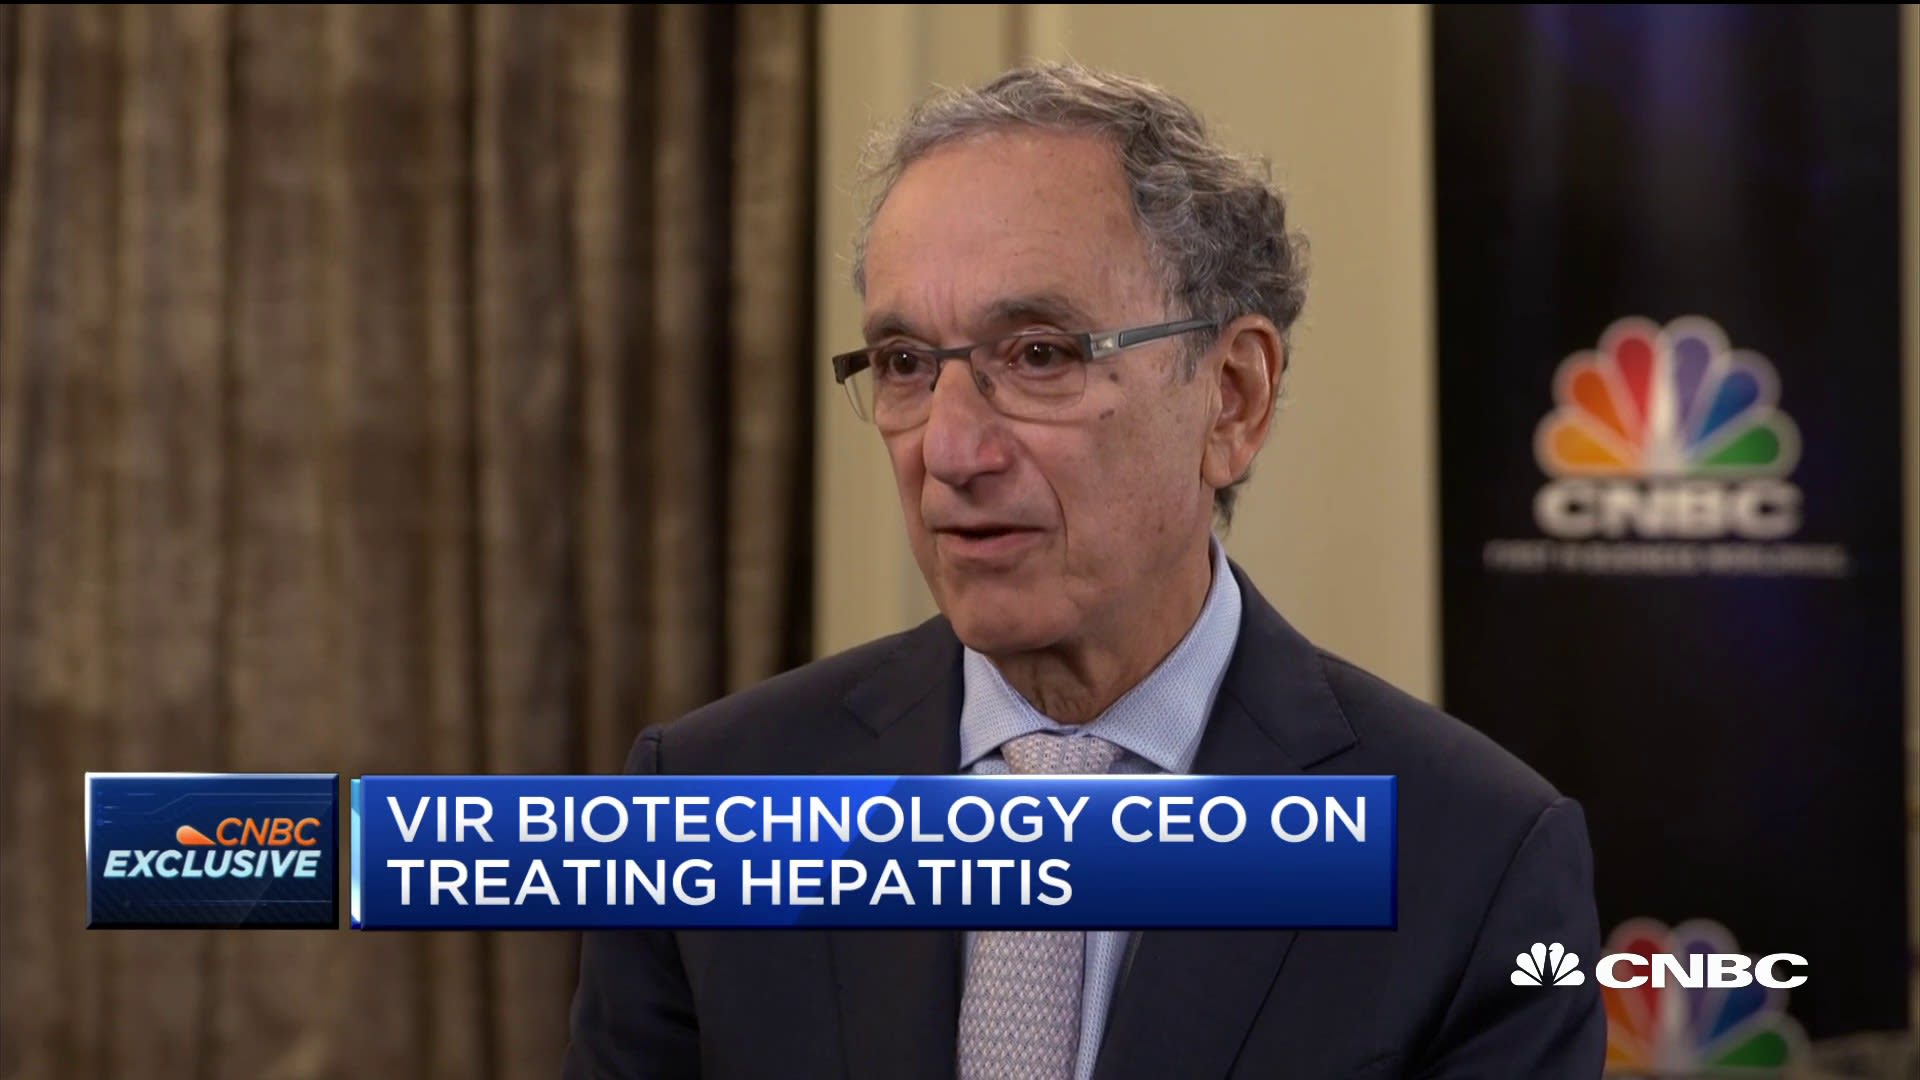 Vir Biotechnology CEO on treating hepatitis